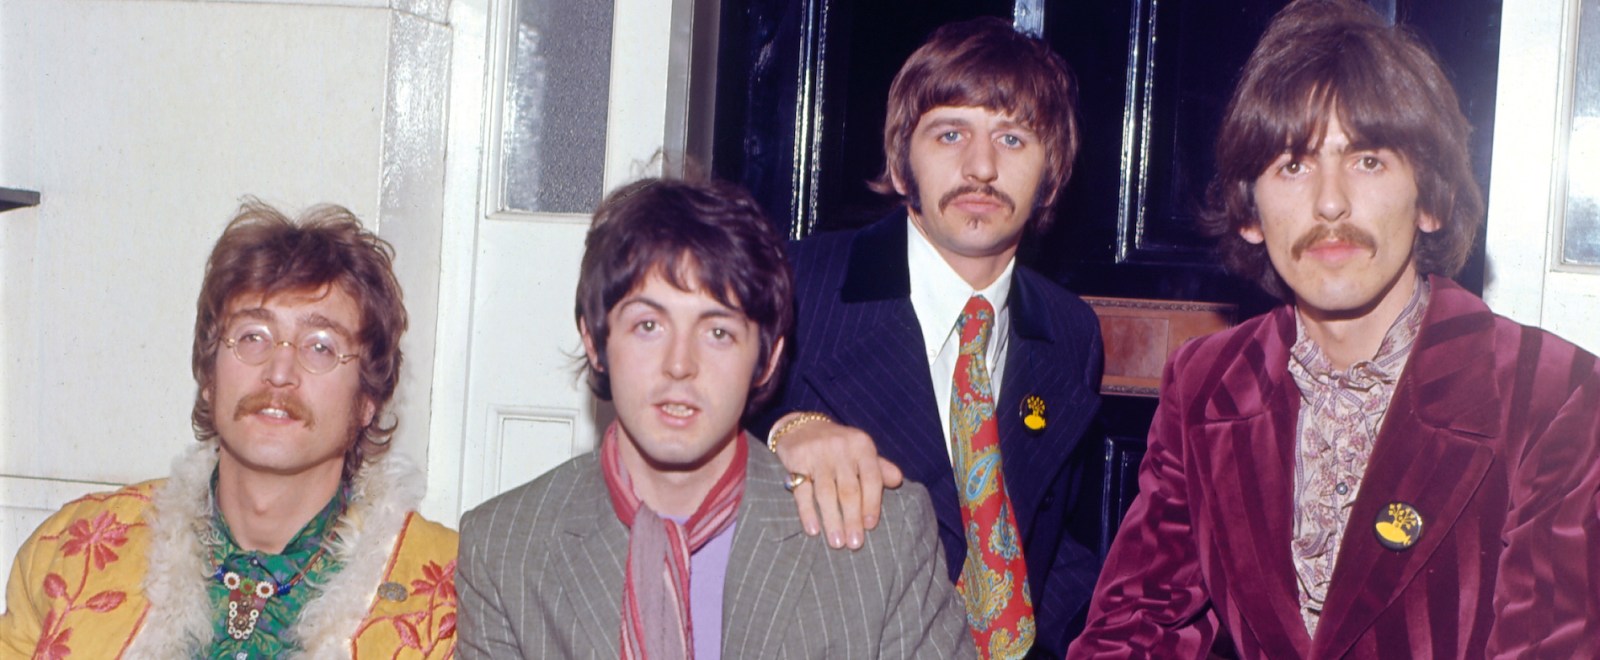 The Beatles John Lennon Paul McCartney Ringo Starr George Harrison 1967